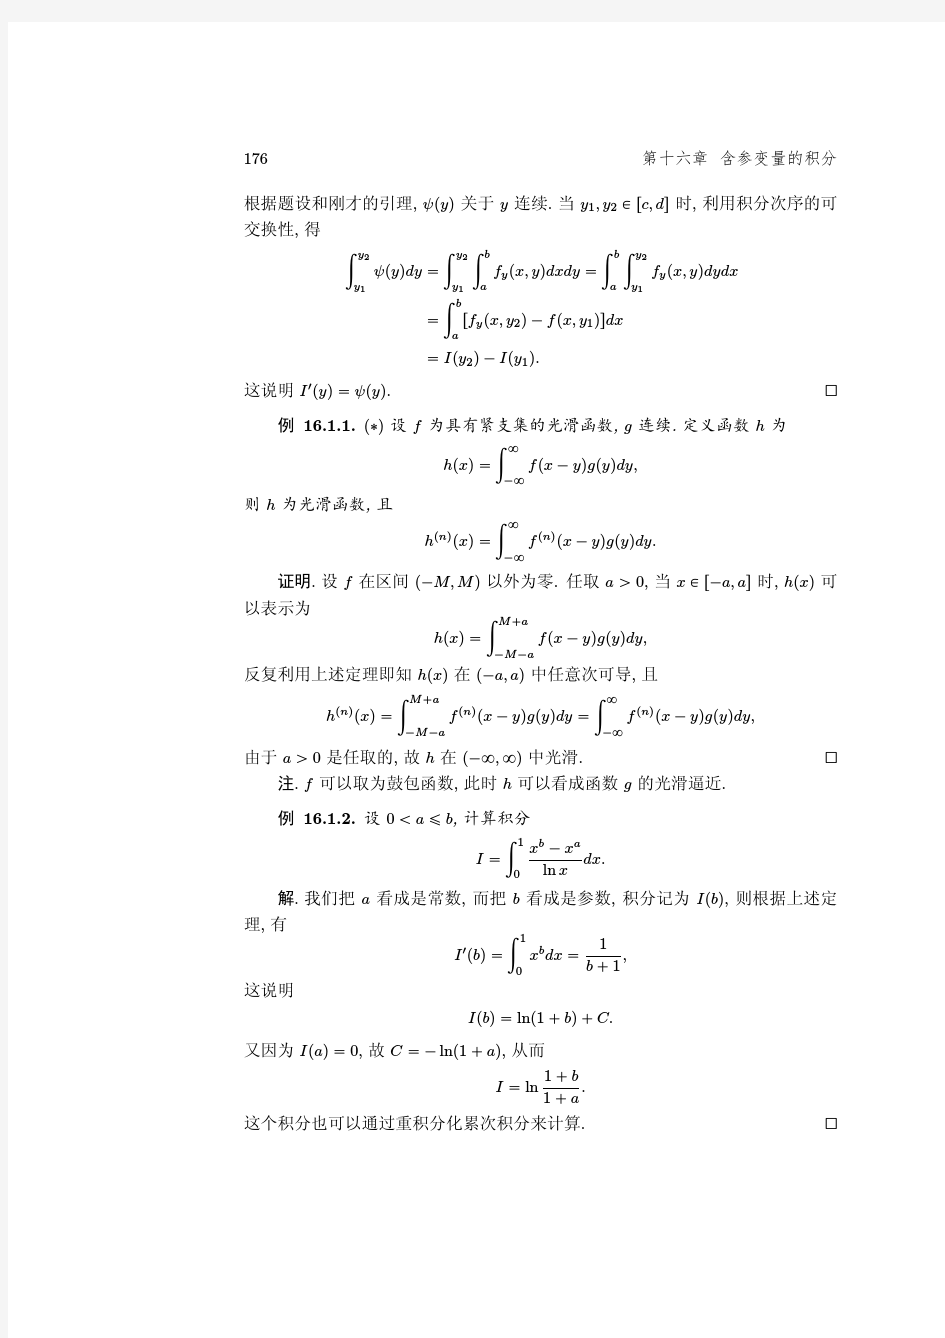 数学系微积分讲义稿(南京大学梅加强)